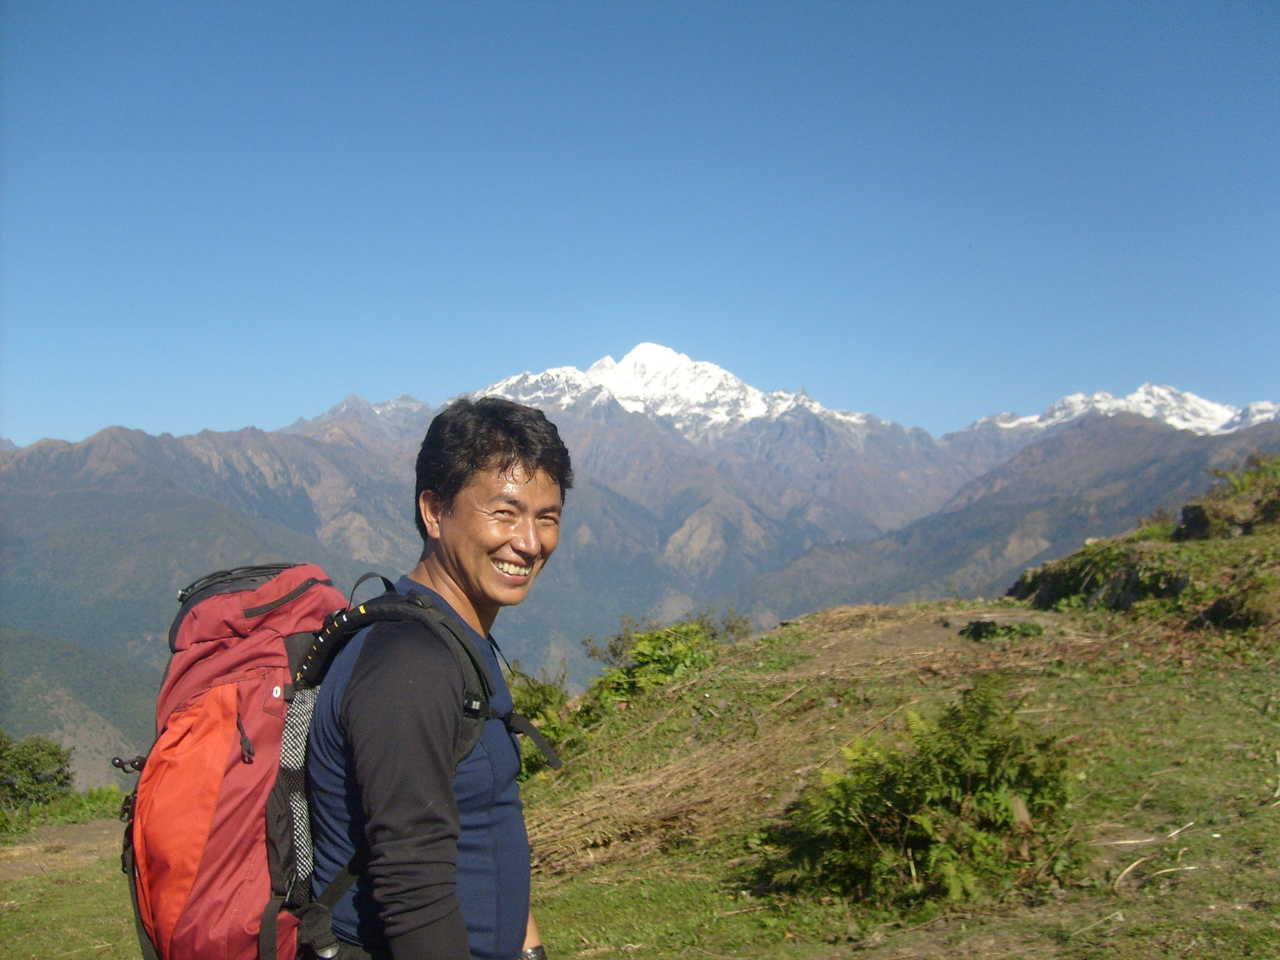 Rudra, guide de notre équipe Altaï Népal